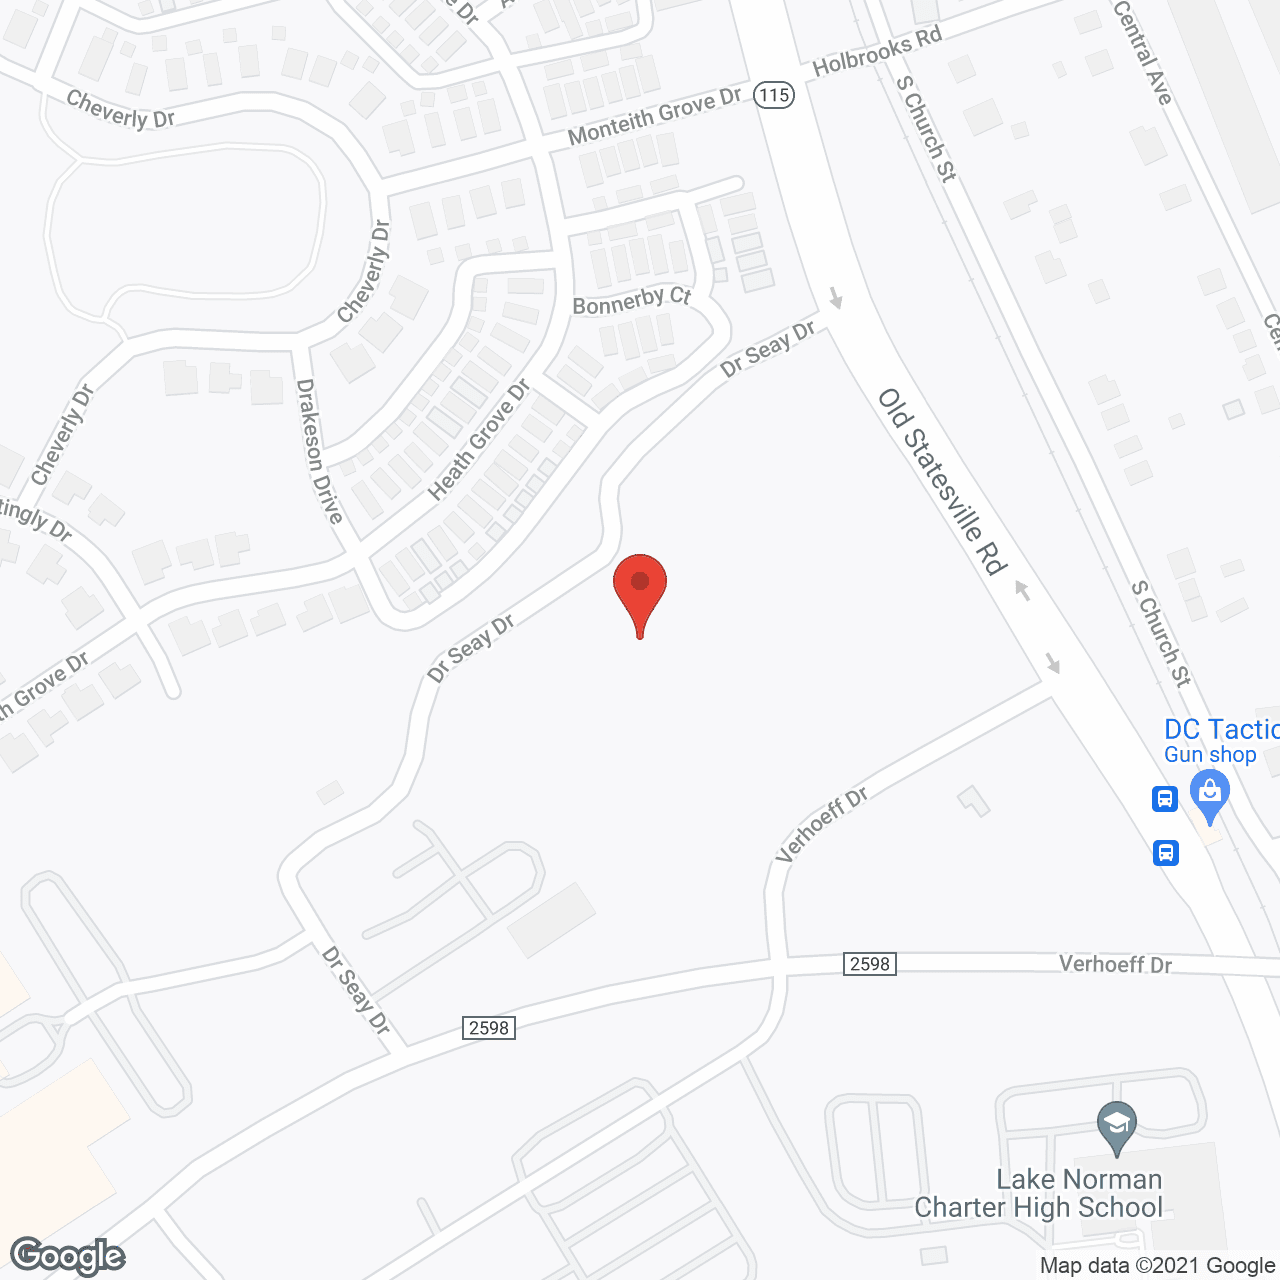 Huntersville Oaks Nursing Home in google map